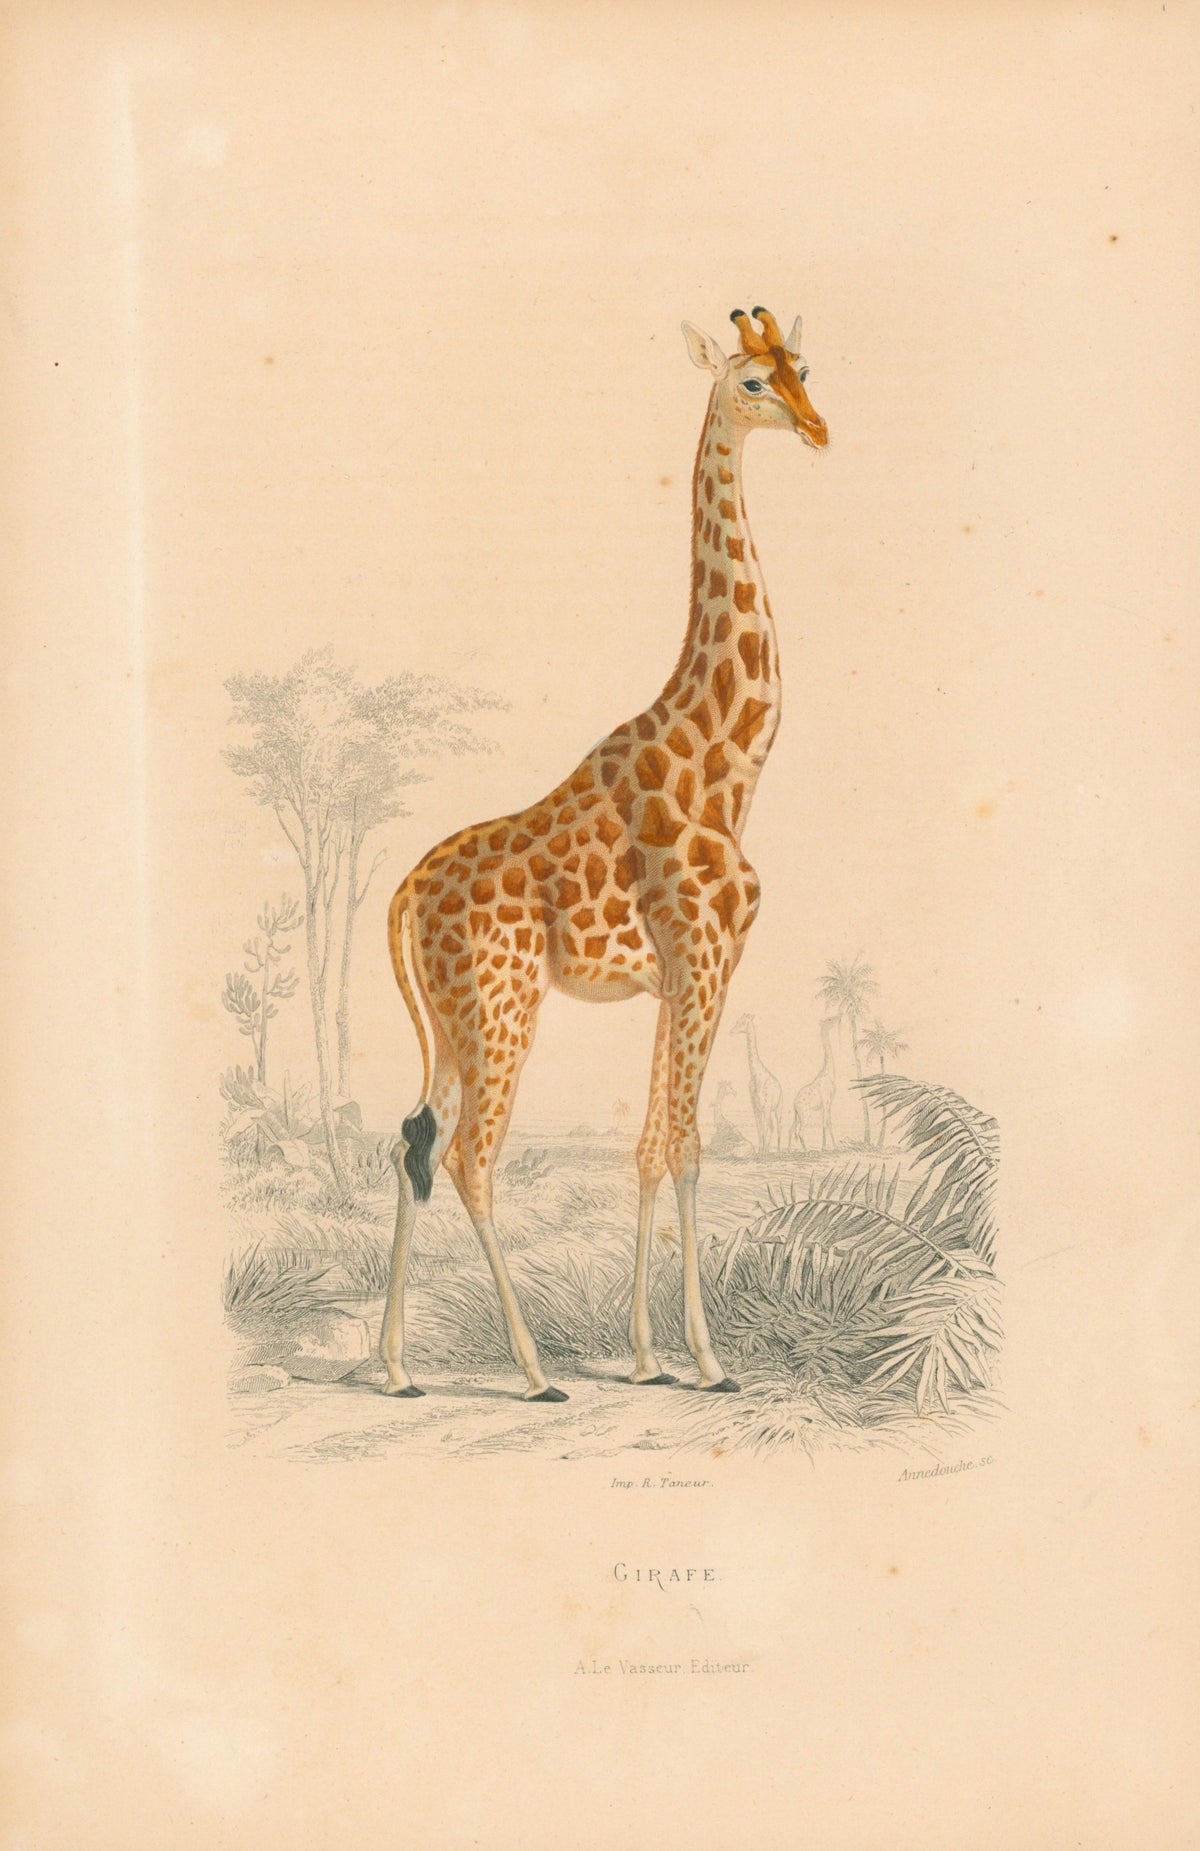 1840 R. Taneur - Giraffe, Mammal - Authentic Vintage Antique Print